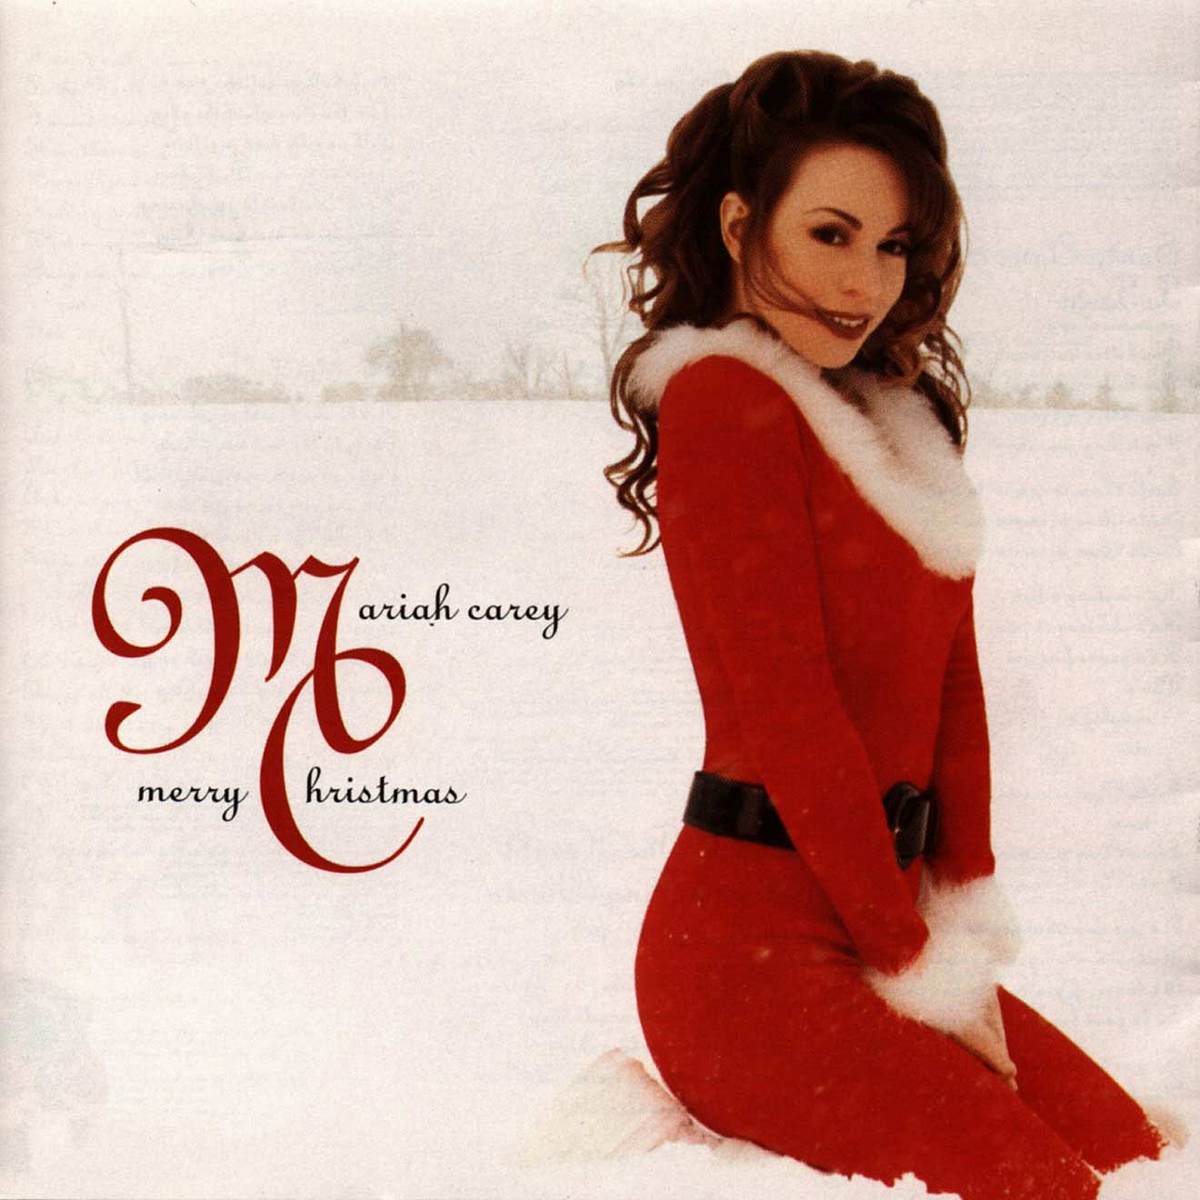 Mariah Carey ist unangefochten die Nummer 1 unter den Weihnachtssongs.